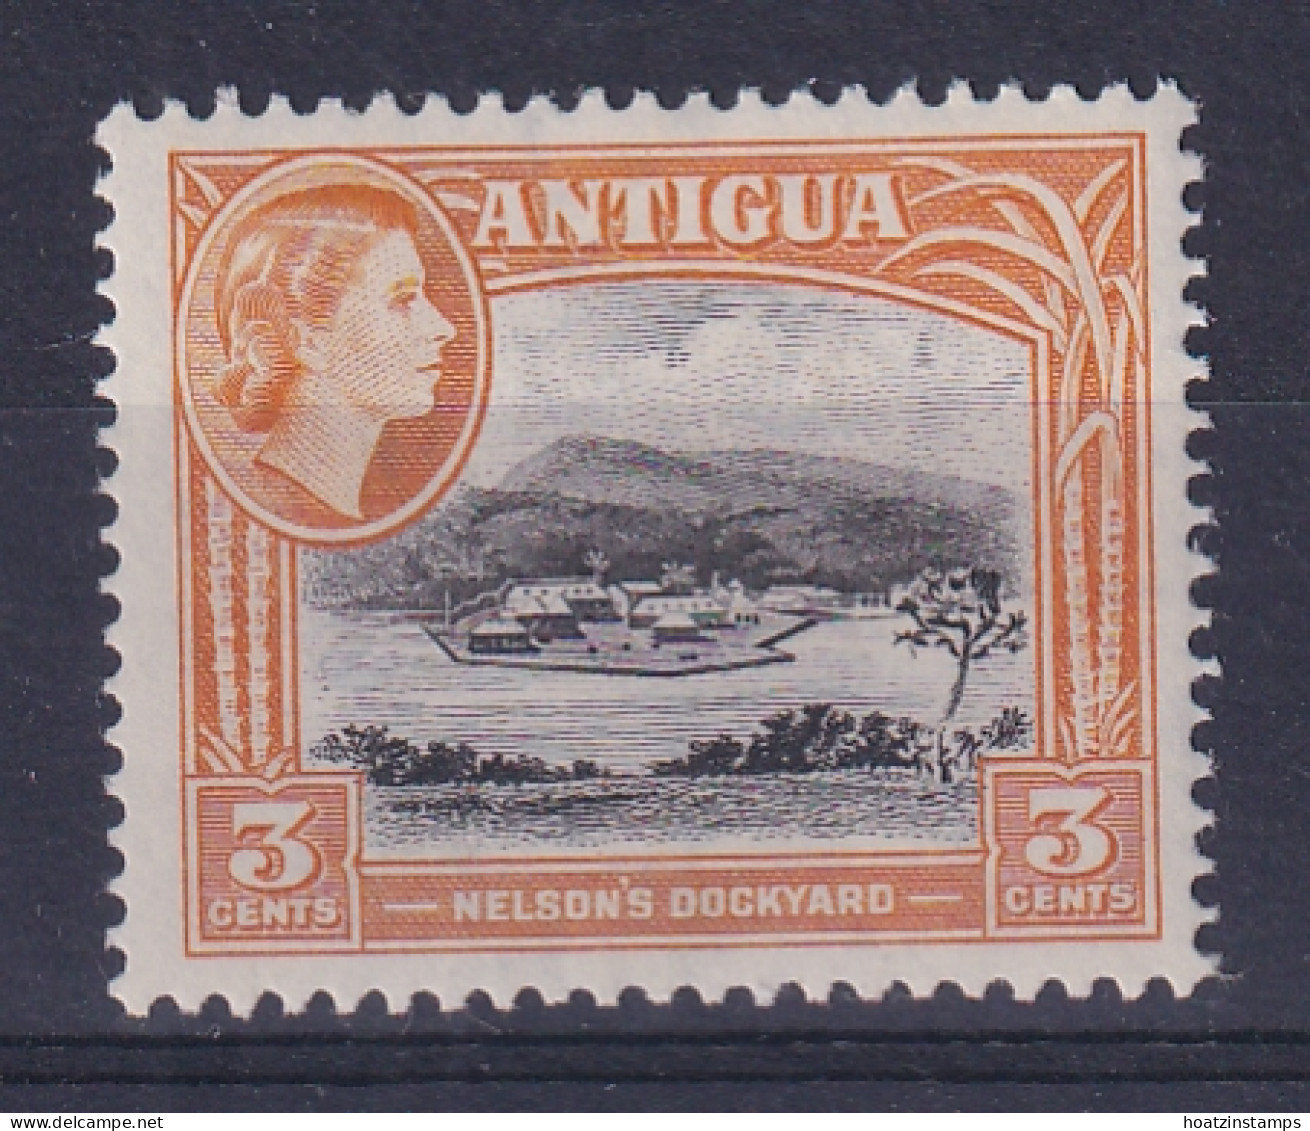 Antigua: 1963/65   QE II - Pictorial     SG152    3c   [Wmk: Block Crown CA]   MH - 1960-1981 Autonomie Interne